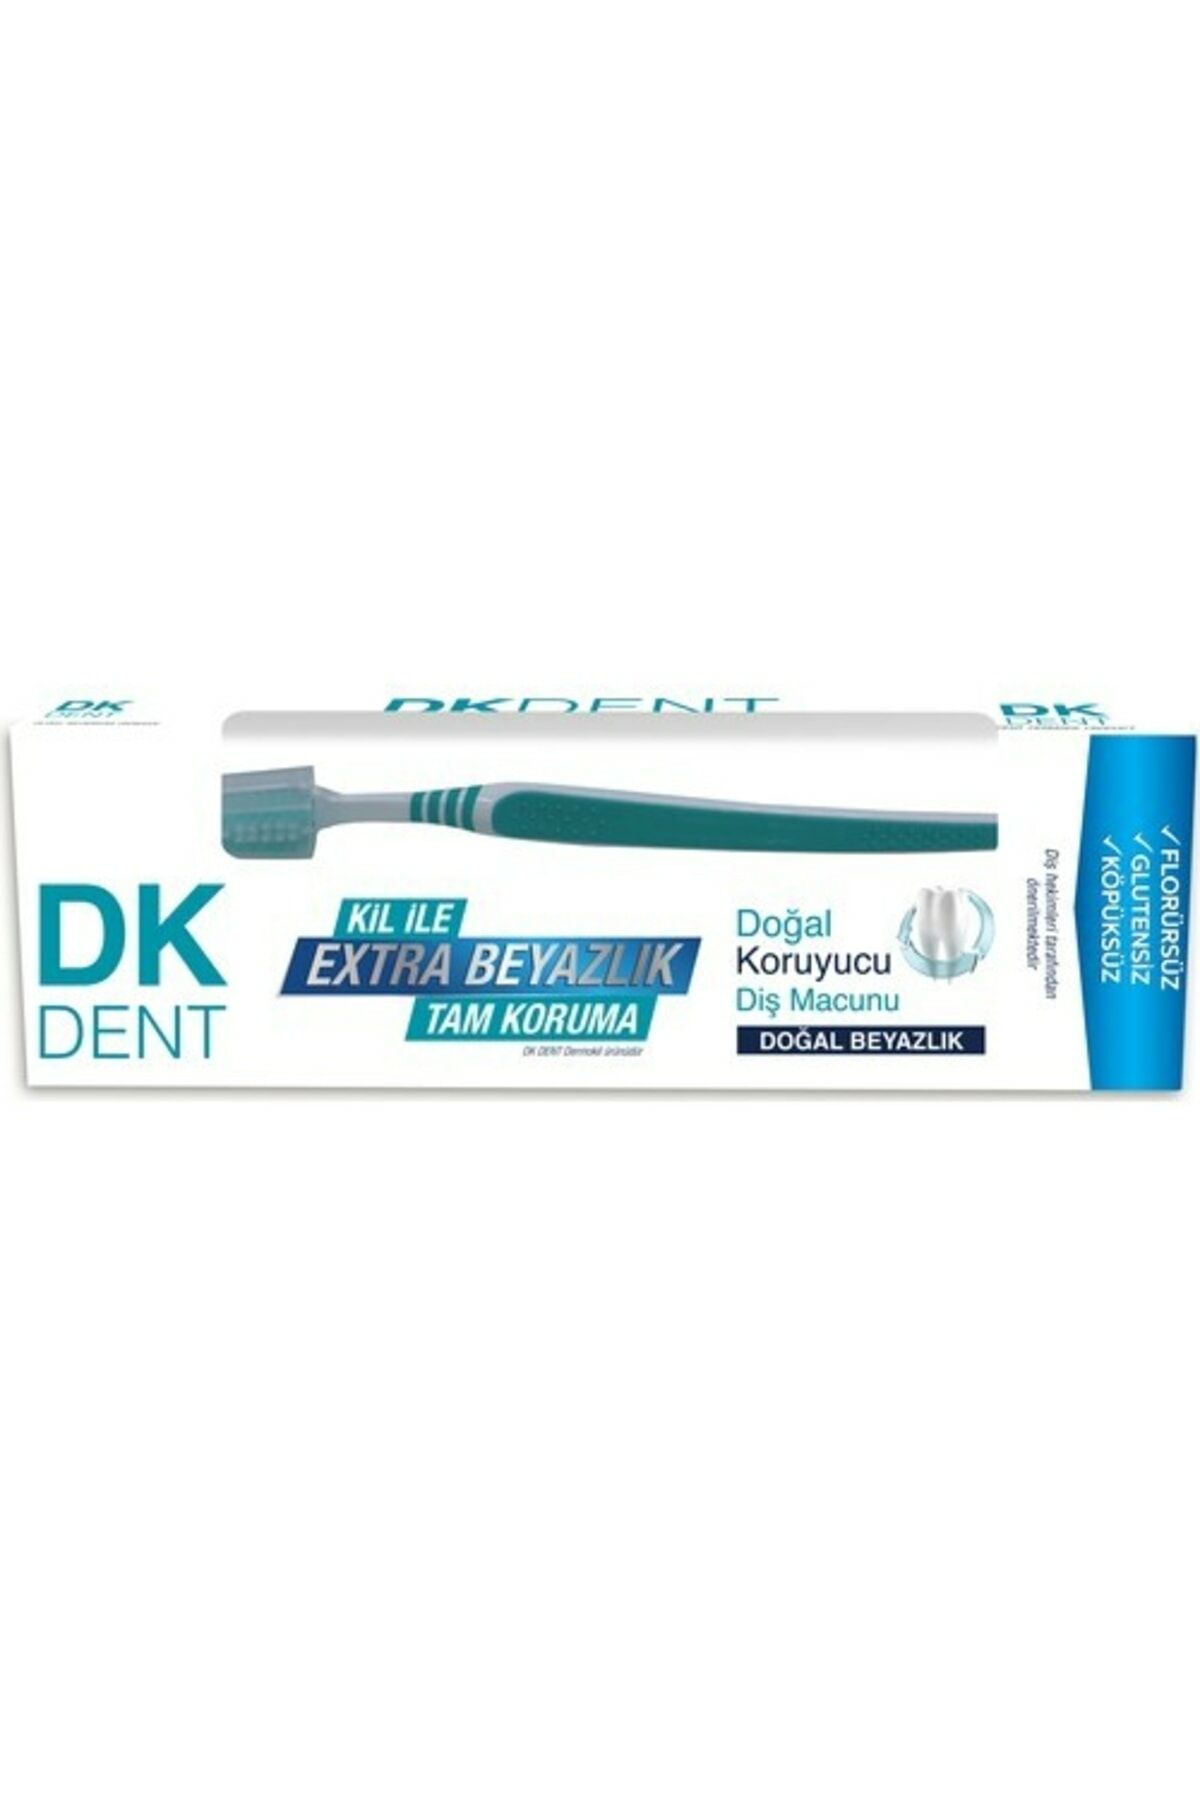 Dk Dent Klasik Diş Macunu Diş Fırçalı 75 ml